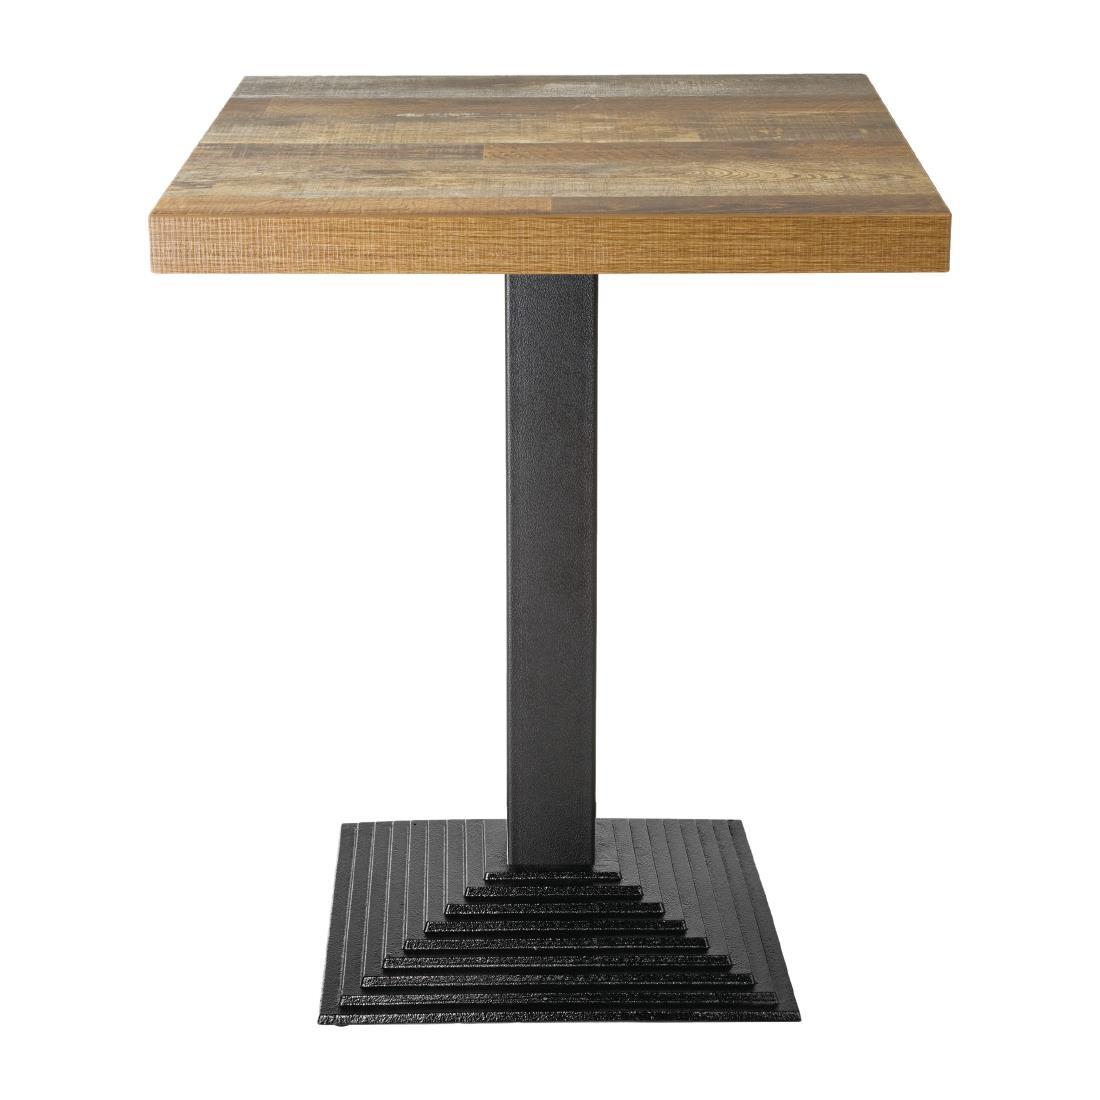 Bolero Pre-Drilled Square Table Top Urban Dark 600mm - DR821  - 3